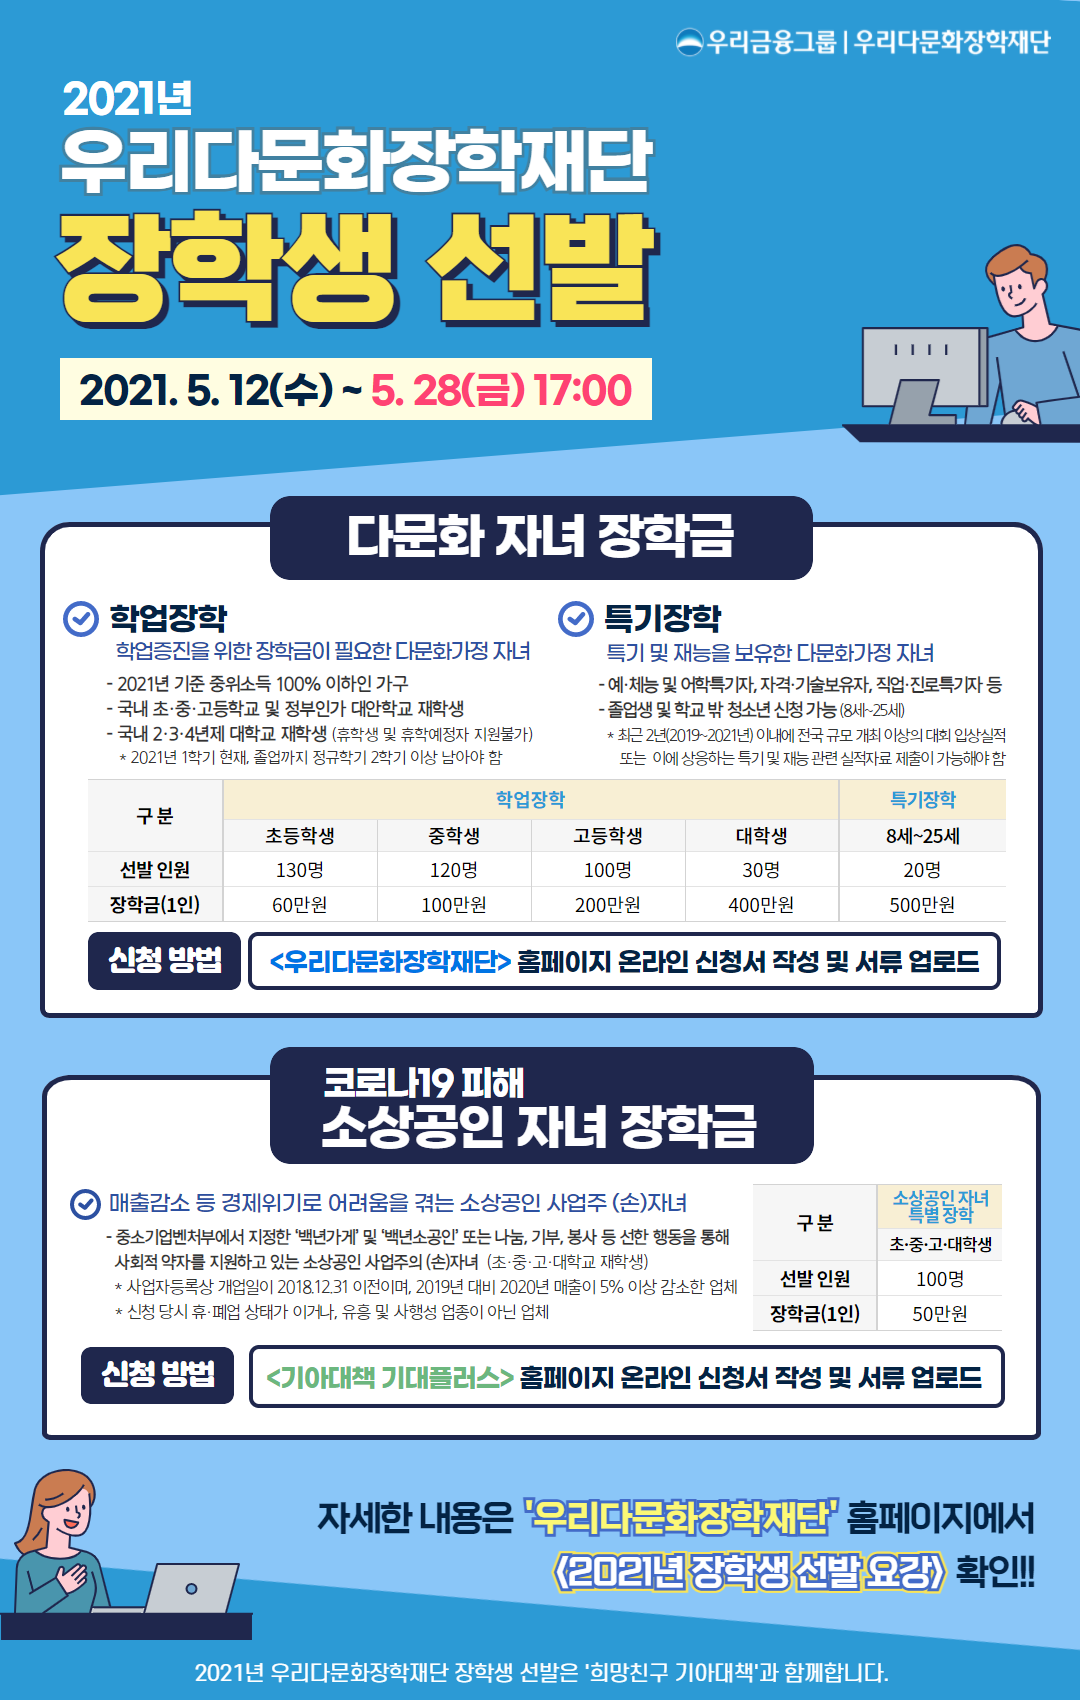 [붙임3] 2021년 우리다문화장학재단 장학생 선발 홍보지.png